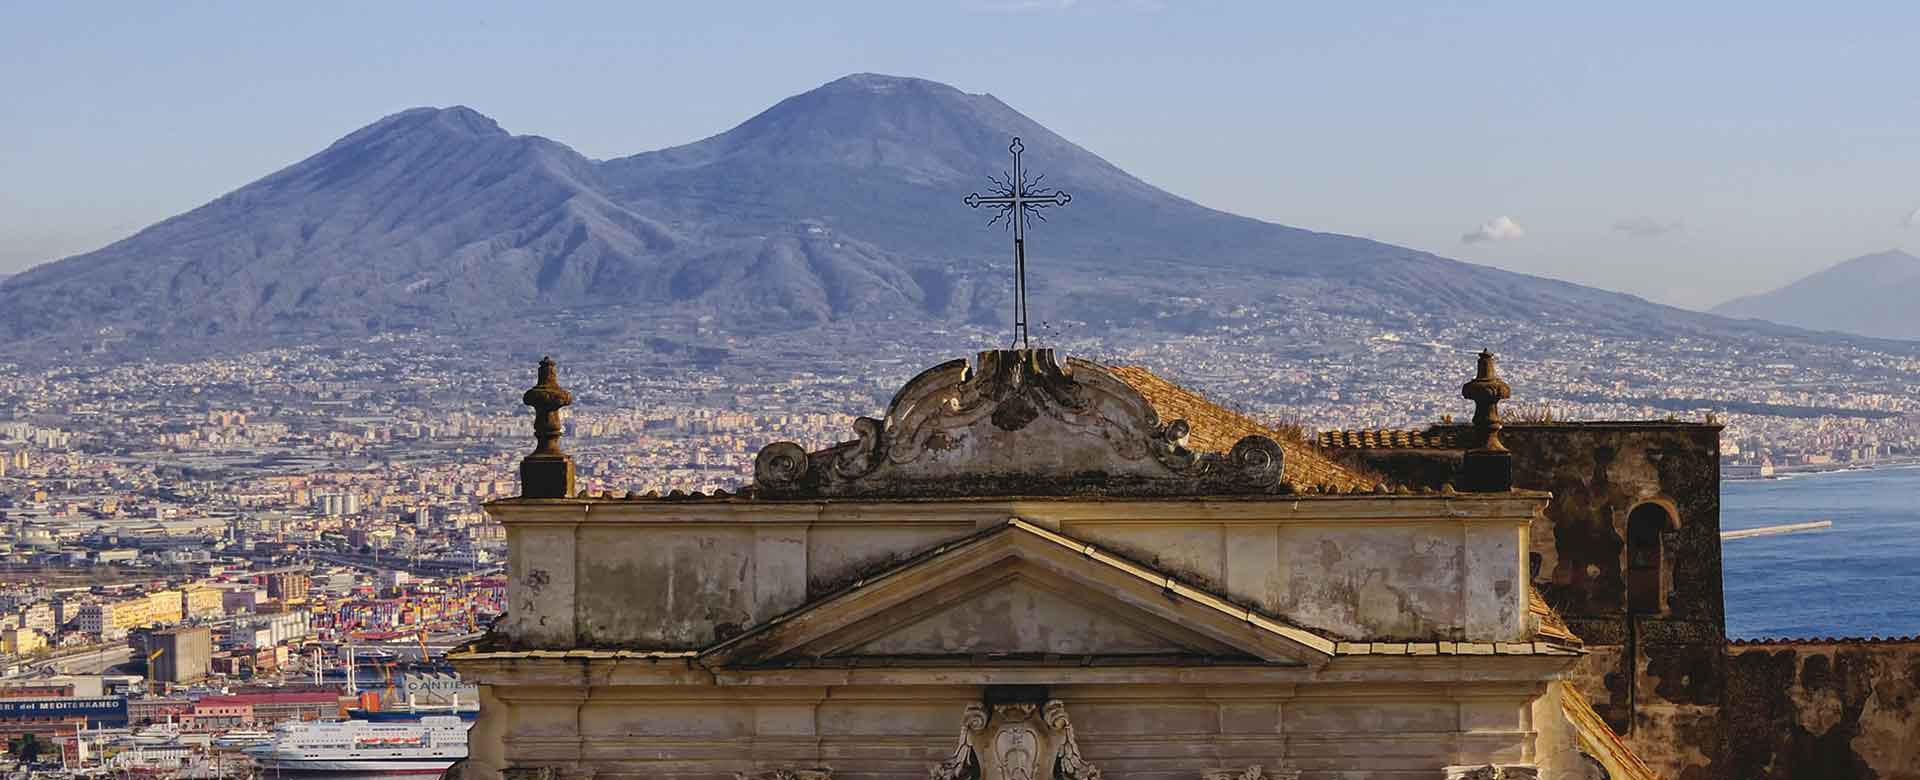 Vista sul Vesuvio, Napoli